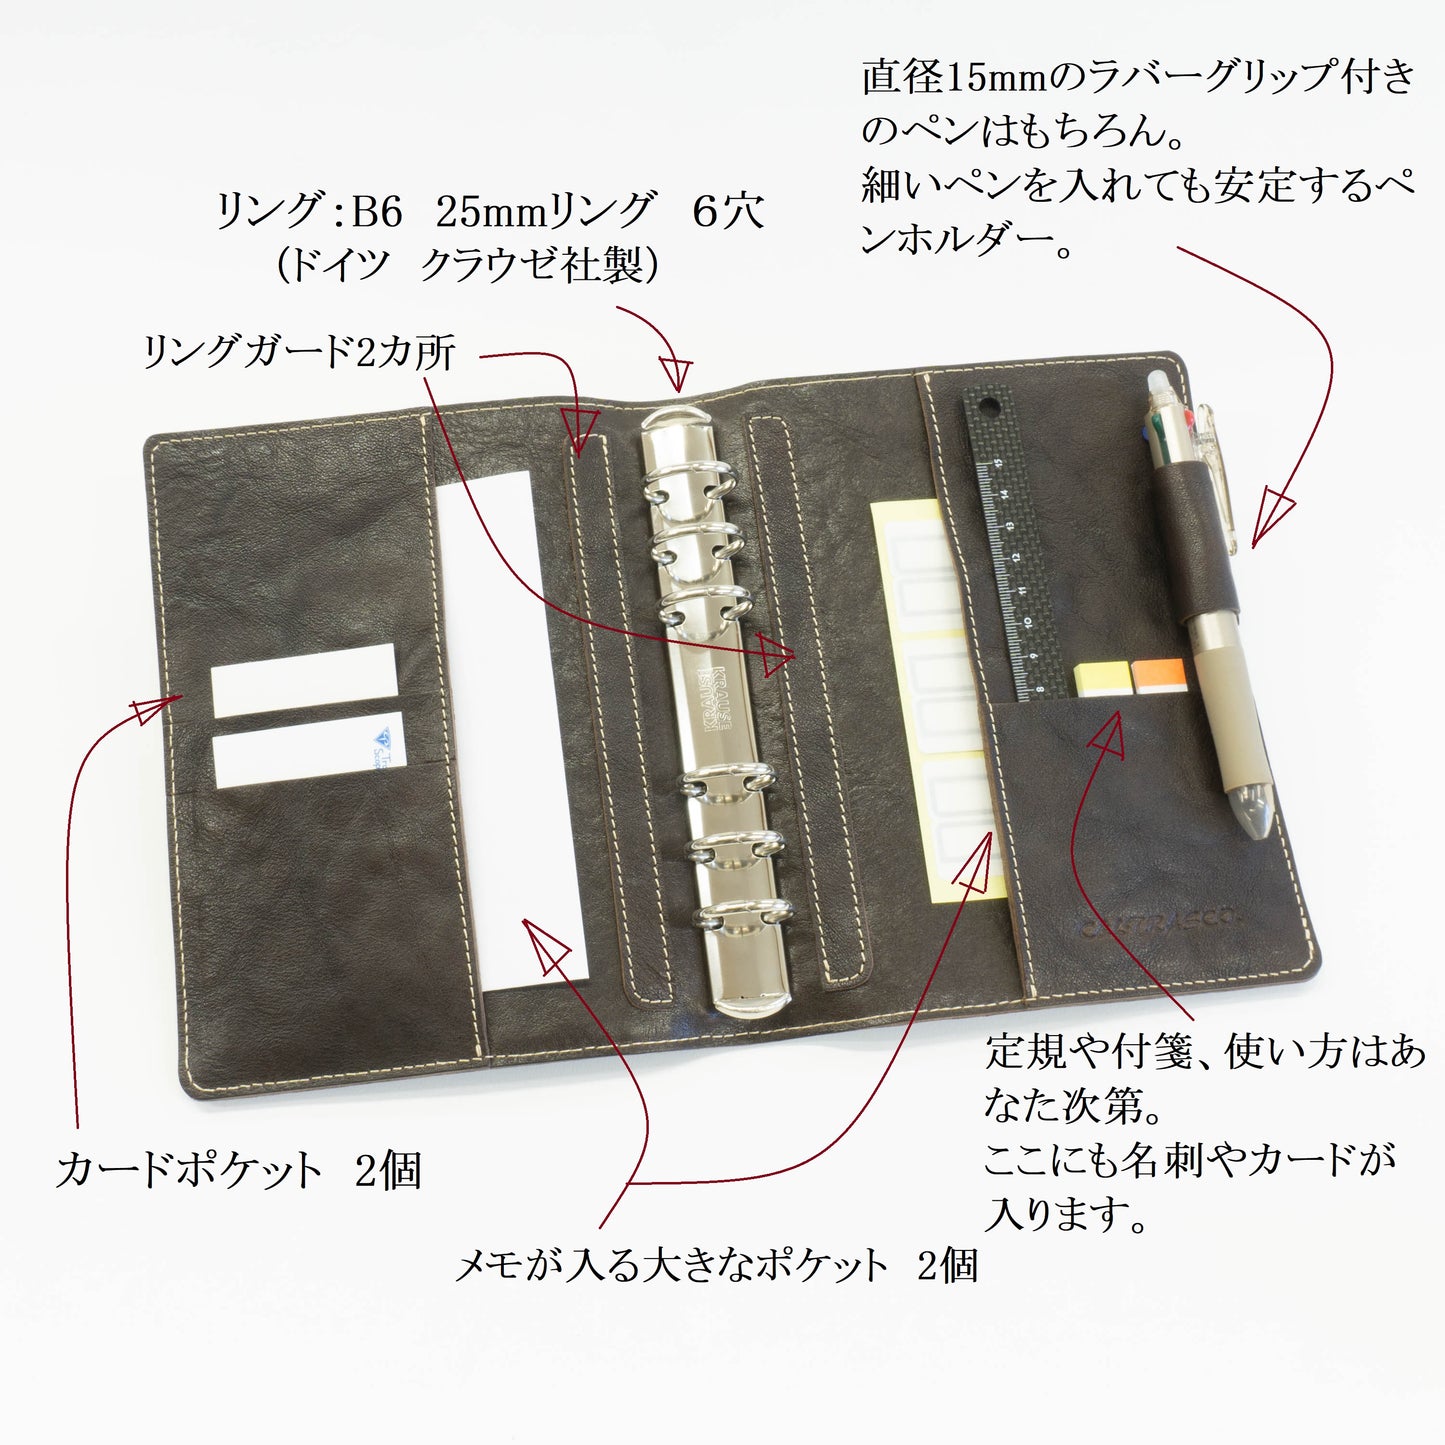 【日本工匠完成收缩】系统笔记本B6/圣经尺寸25mm环6孔